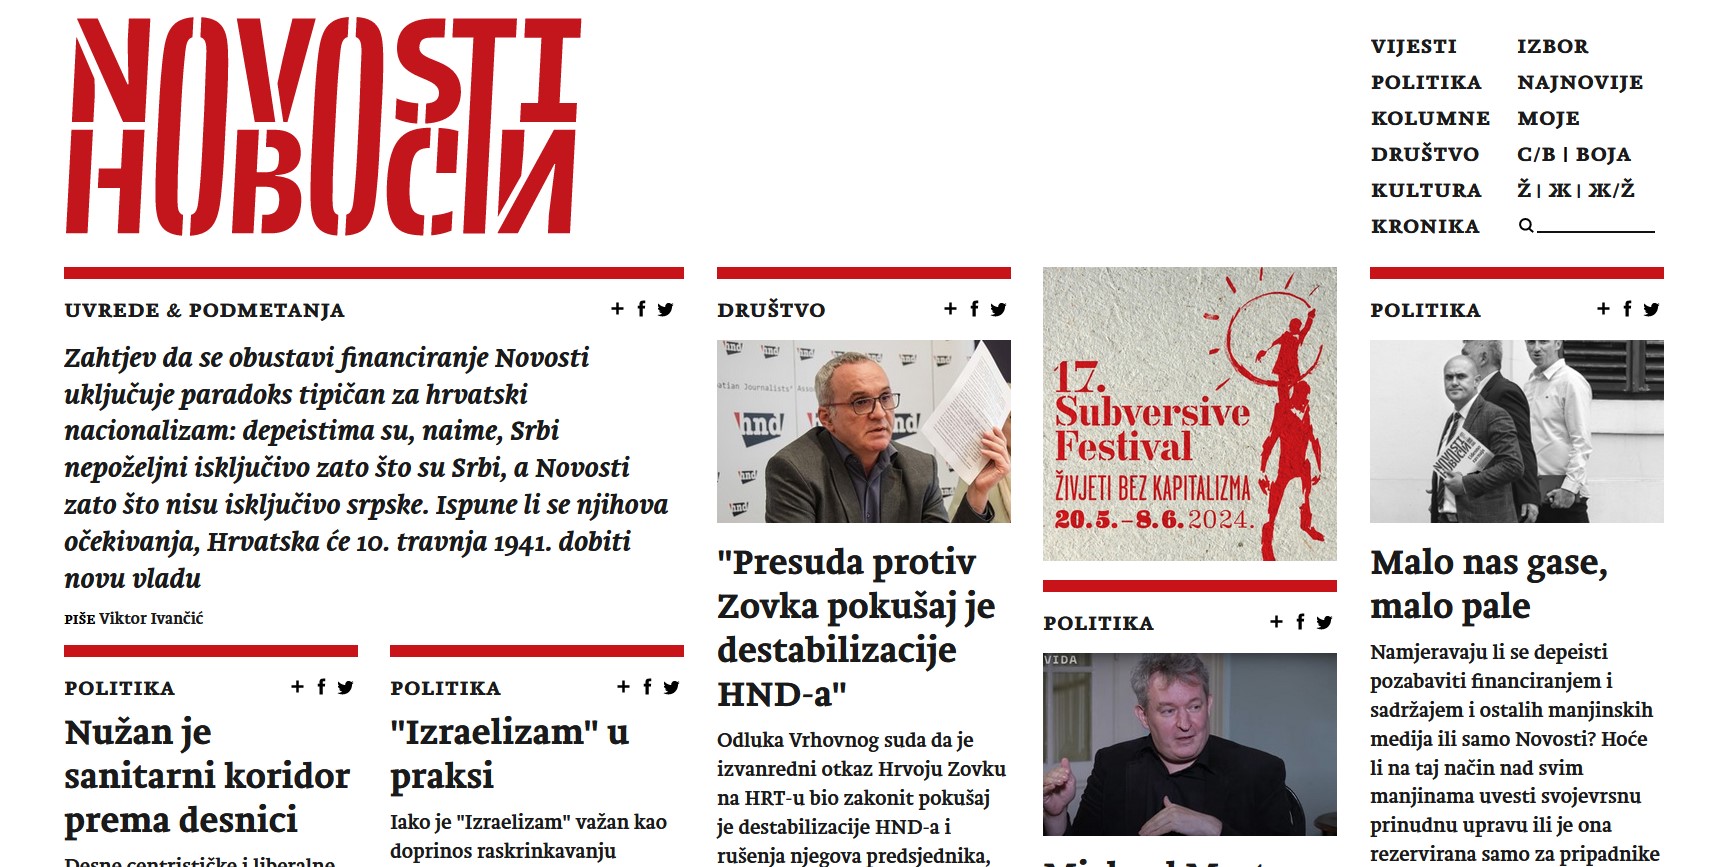 La homepage del portale Novosti